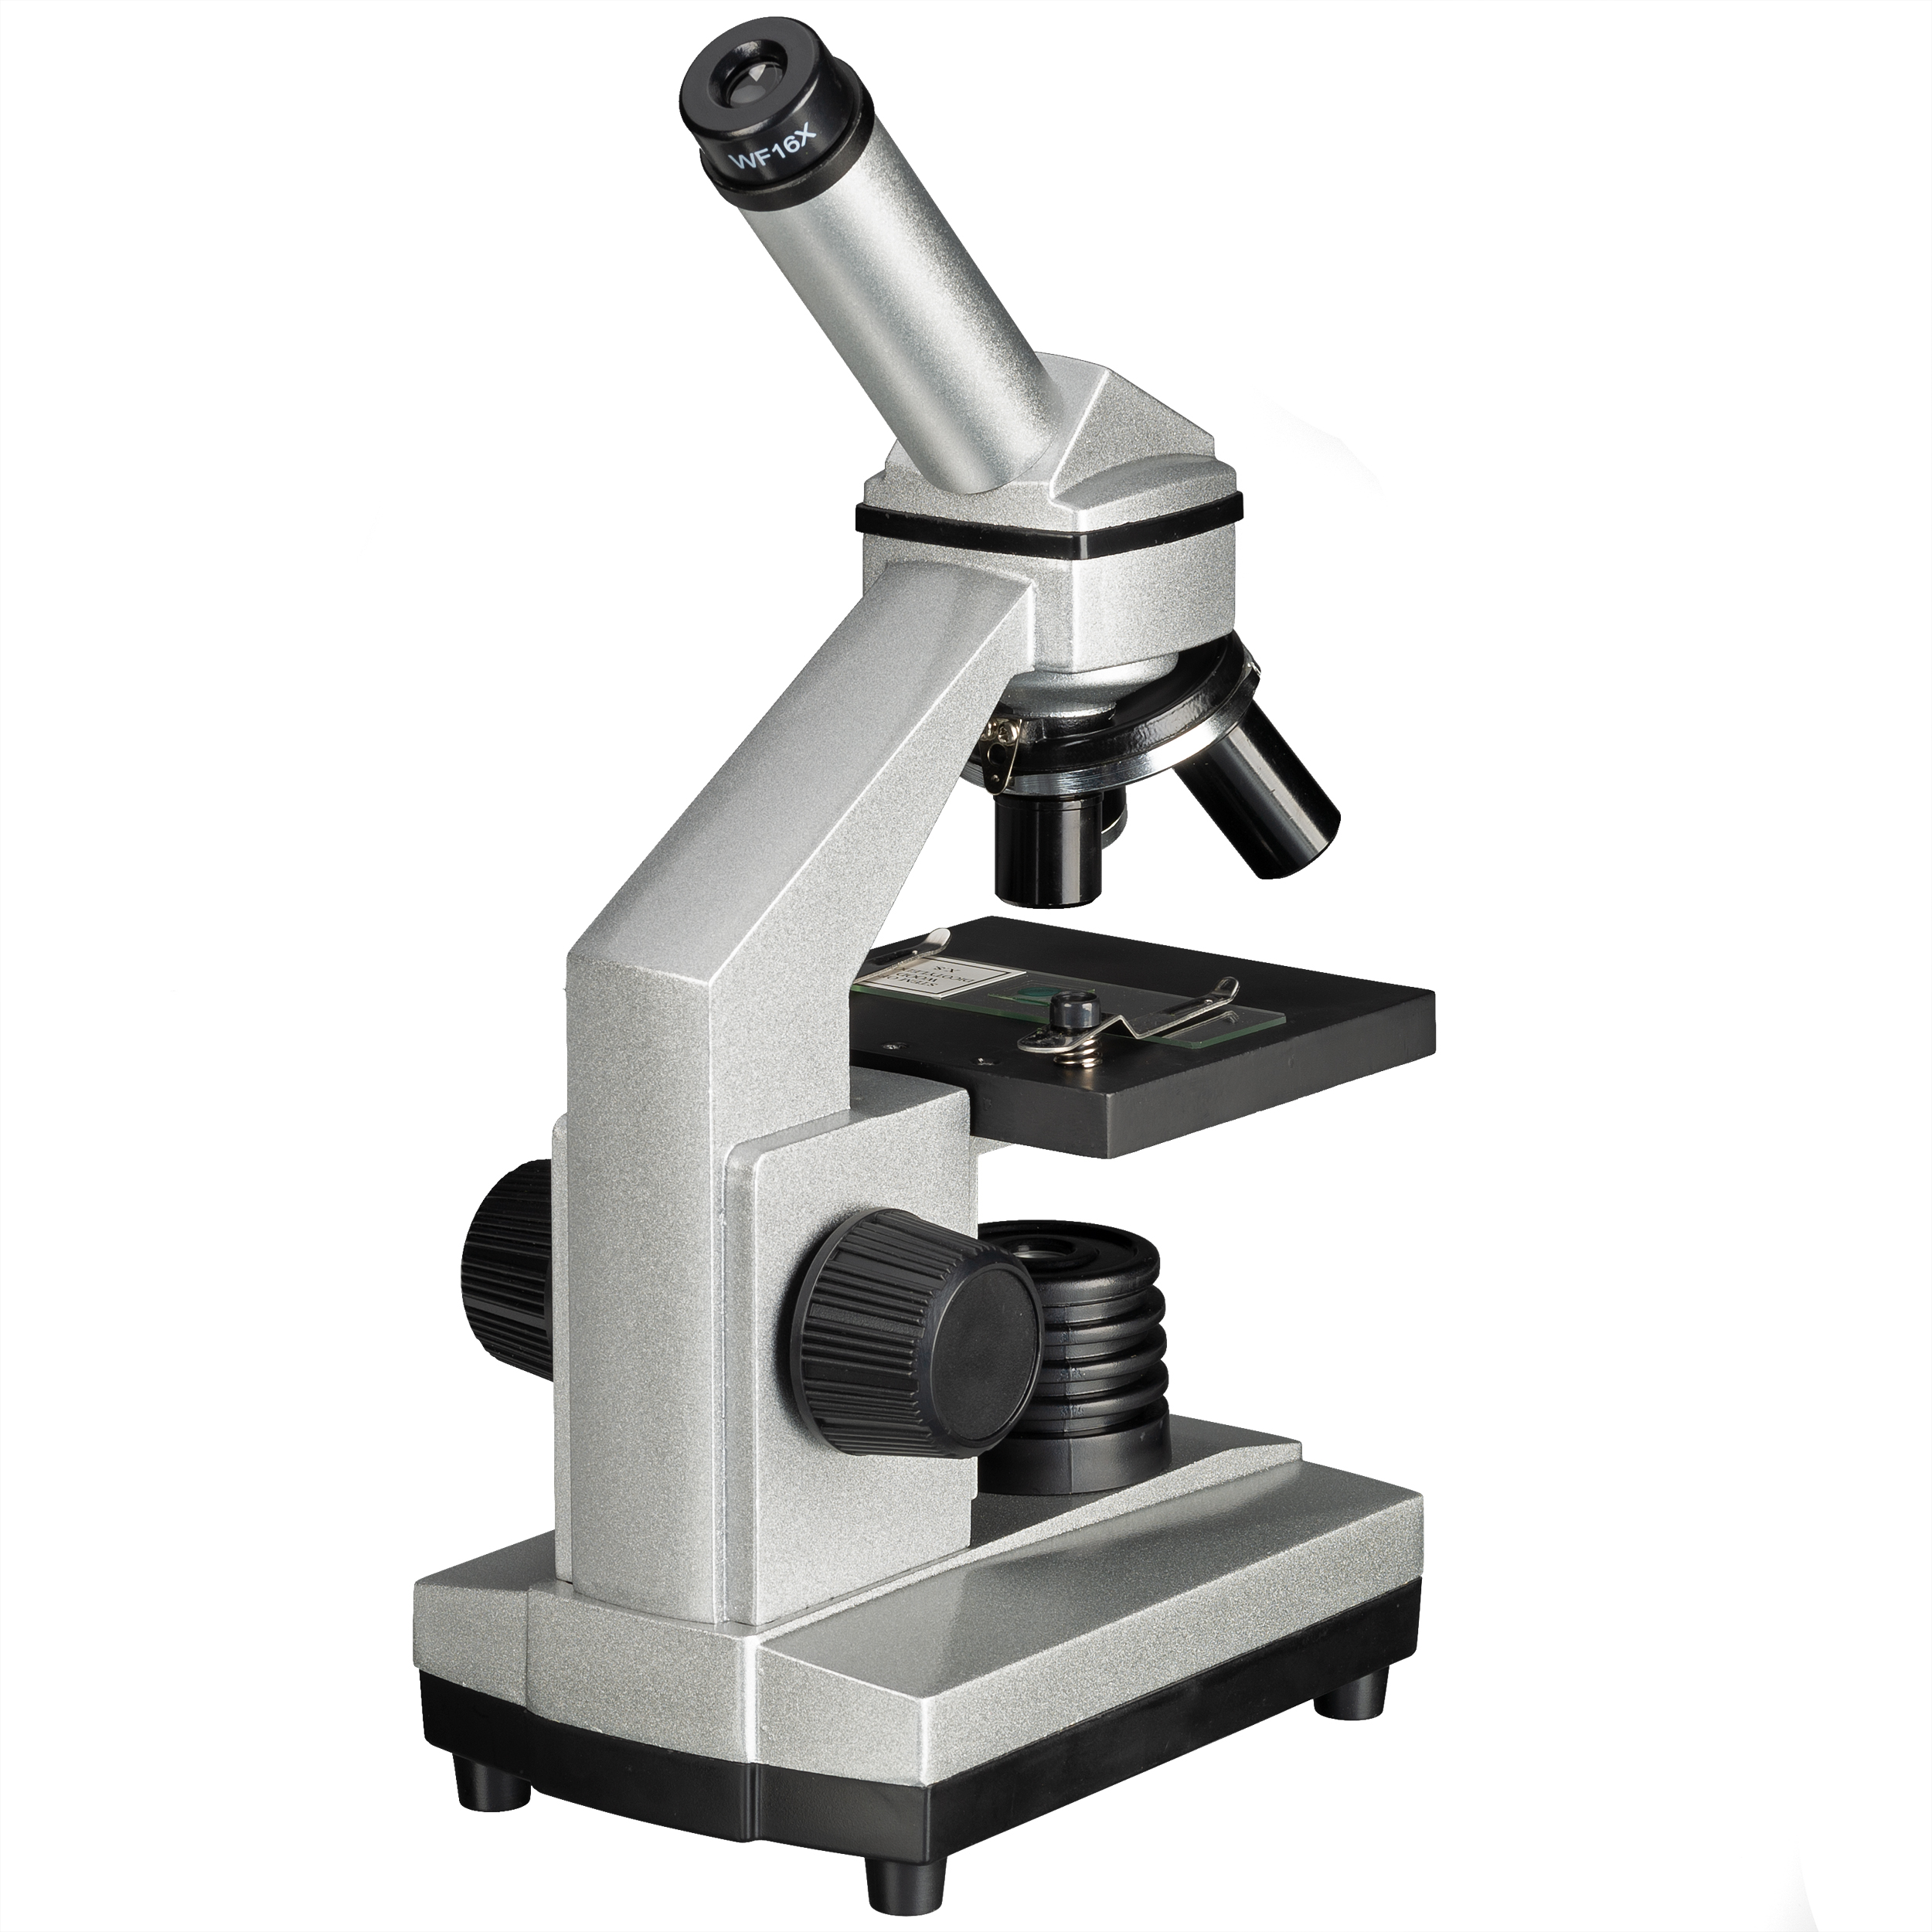 BRESSER JUNIOR 40x - 1.024x Mikroskop mit HD-Okularkamera (Refurbished)